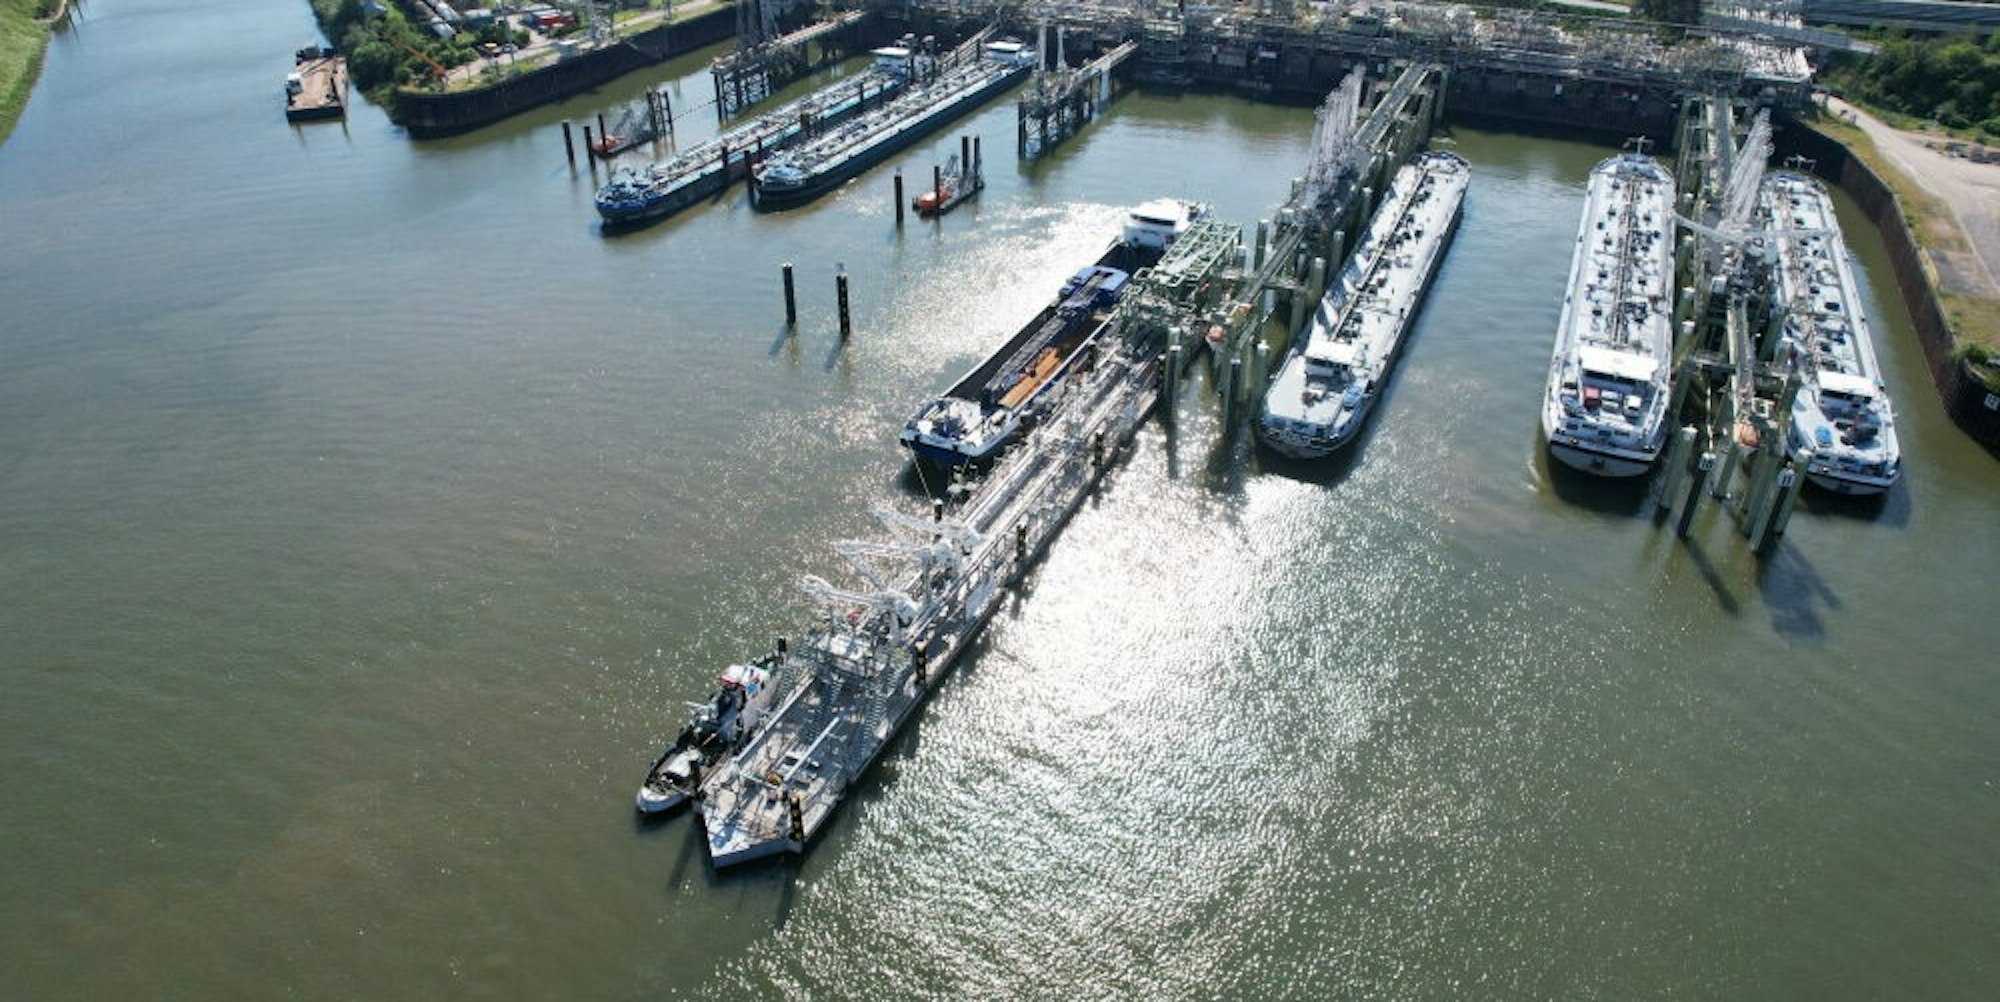 Der 2400 Tonnen schwere schwimmende Schiffsanleger (Bildmitte) wird im Godorfer Hafen befestigt und im September in Betrieb genommen.